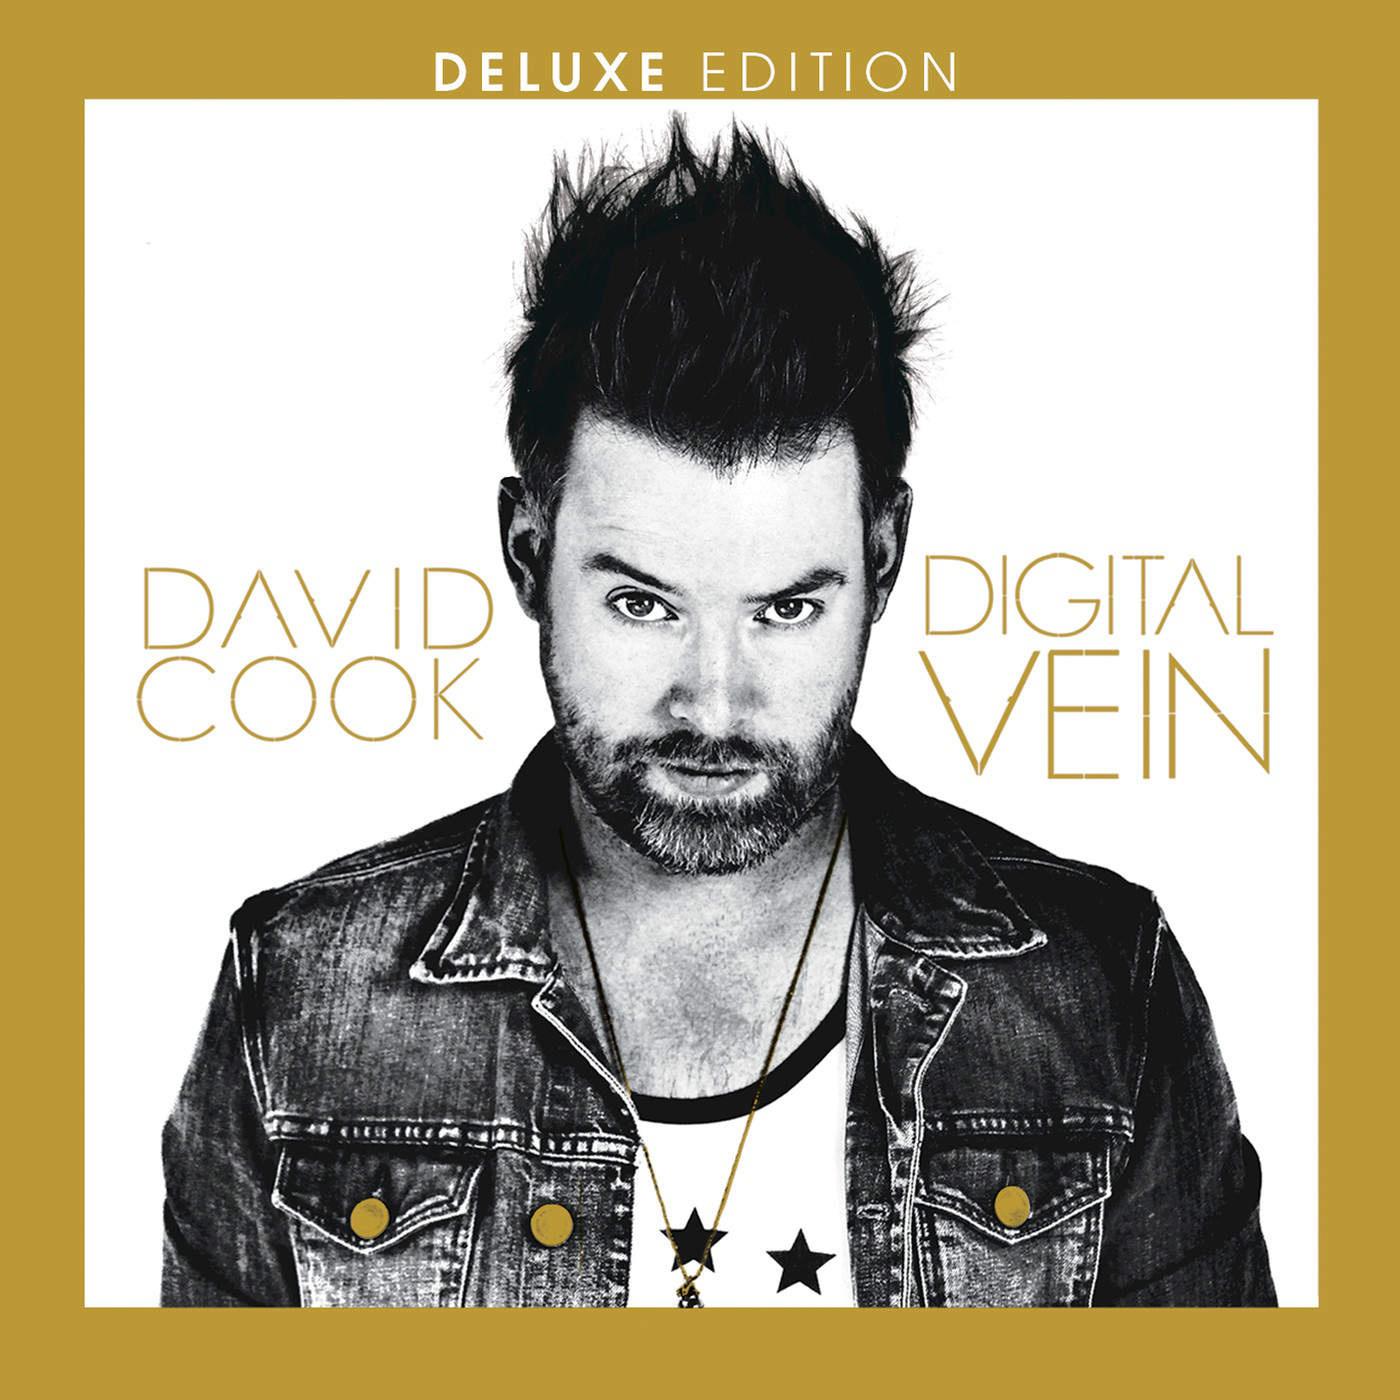 Digital Vein (Deluxe Version)专辑